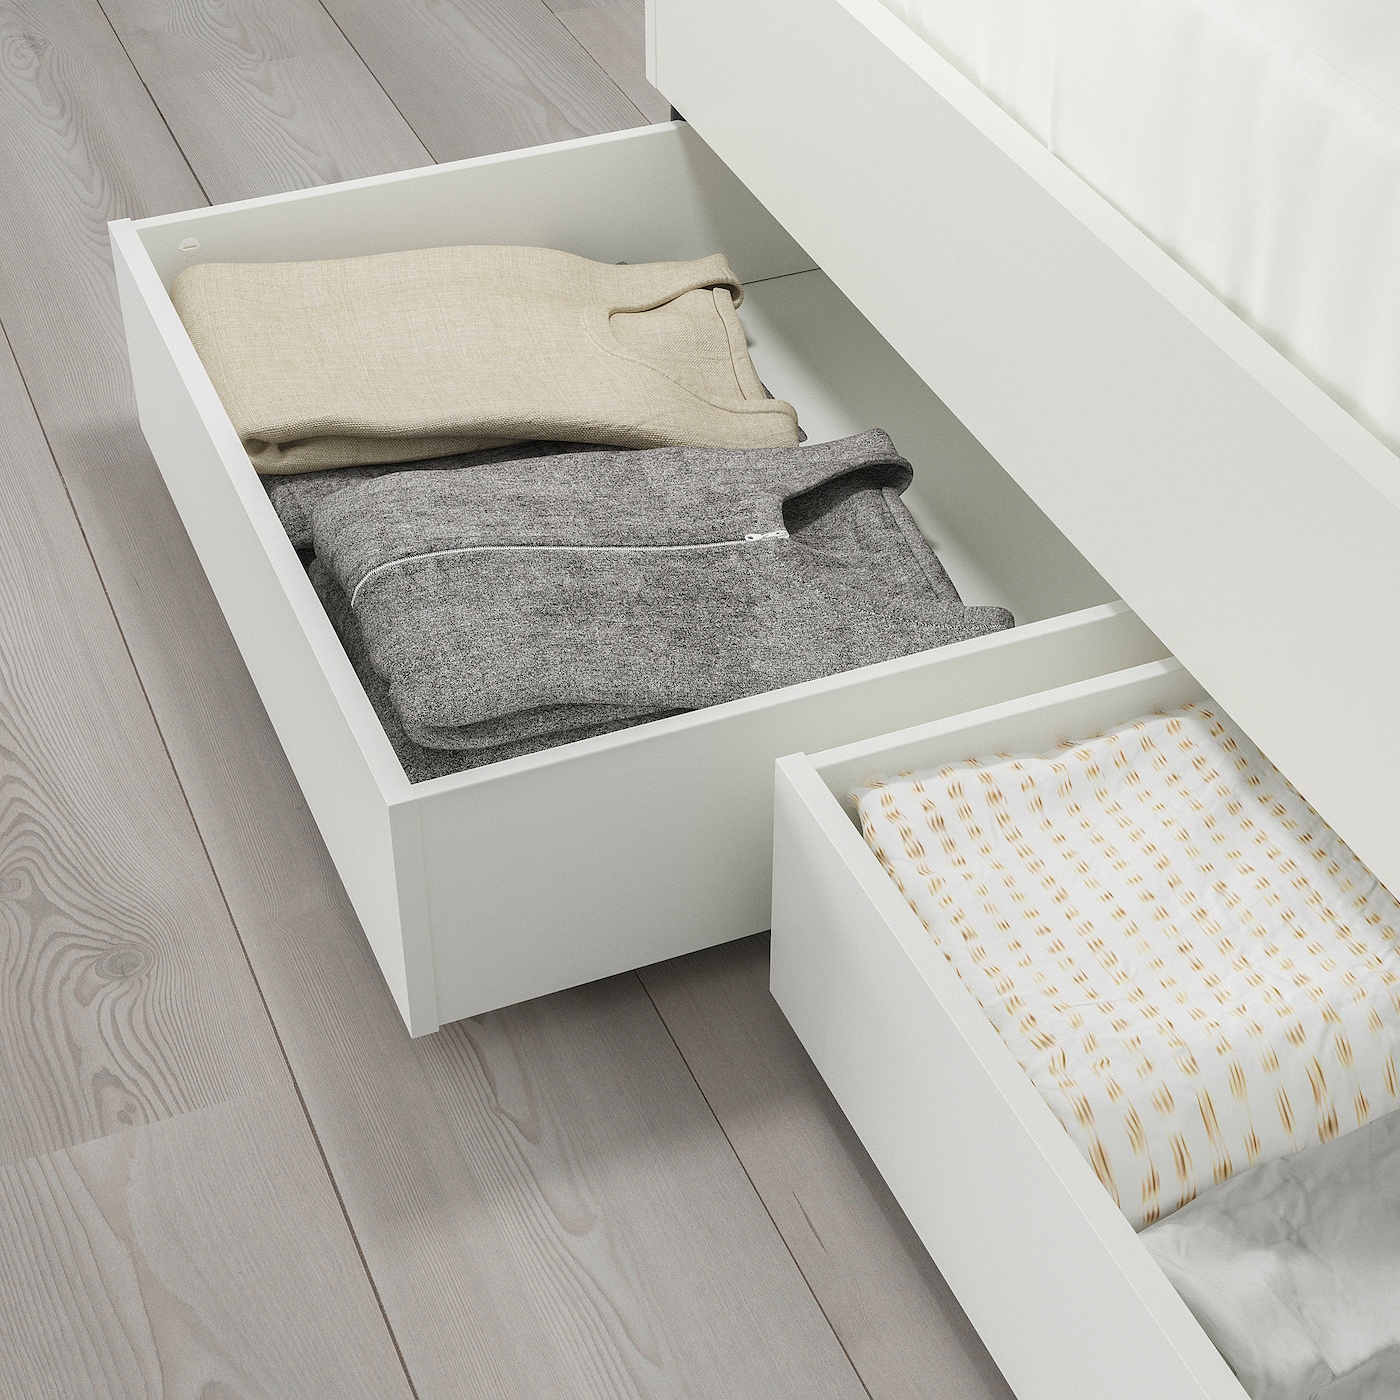 BRUKSVARA 布瓦拉床用储物盒白色- IKEA